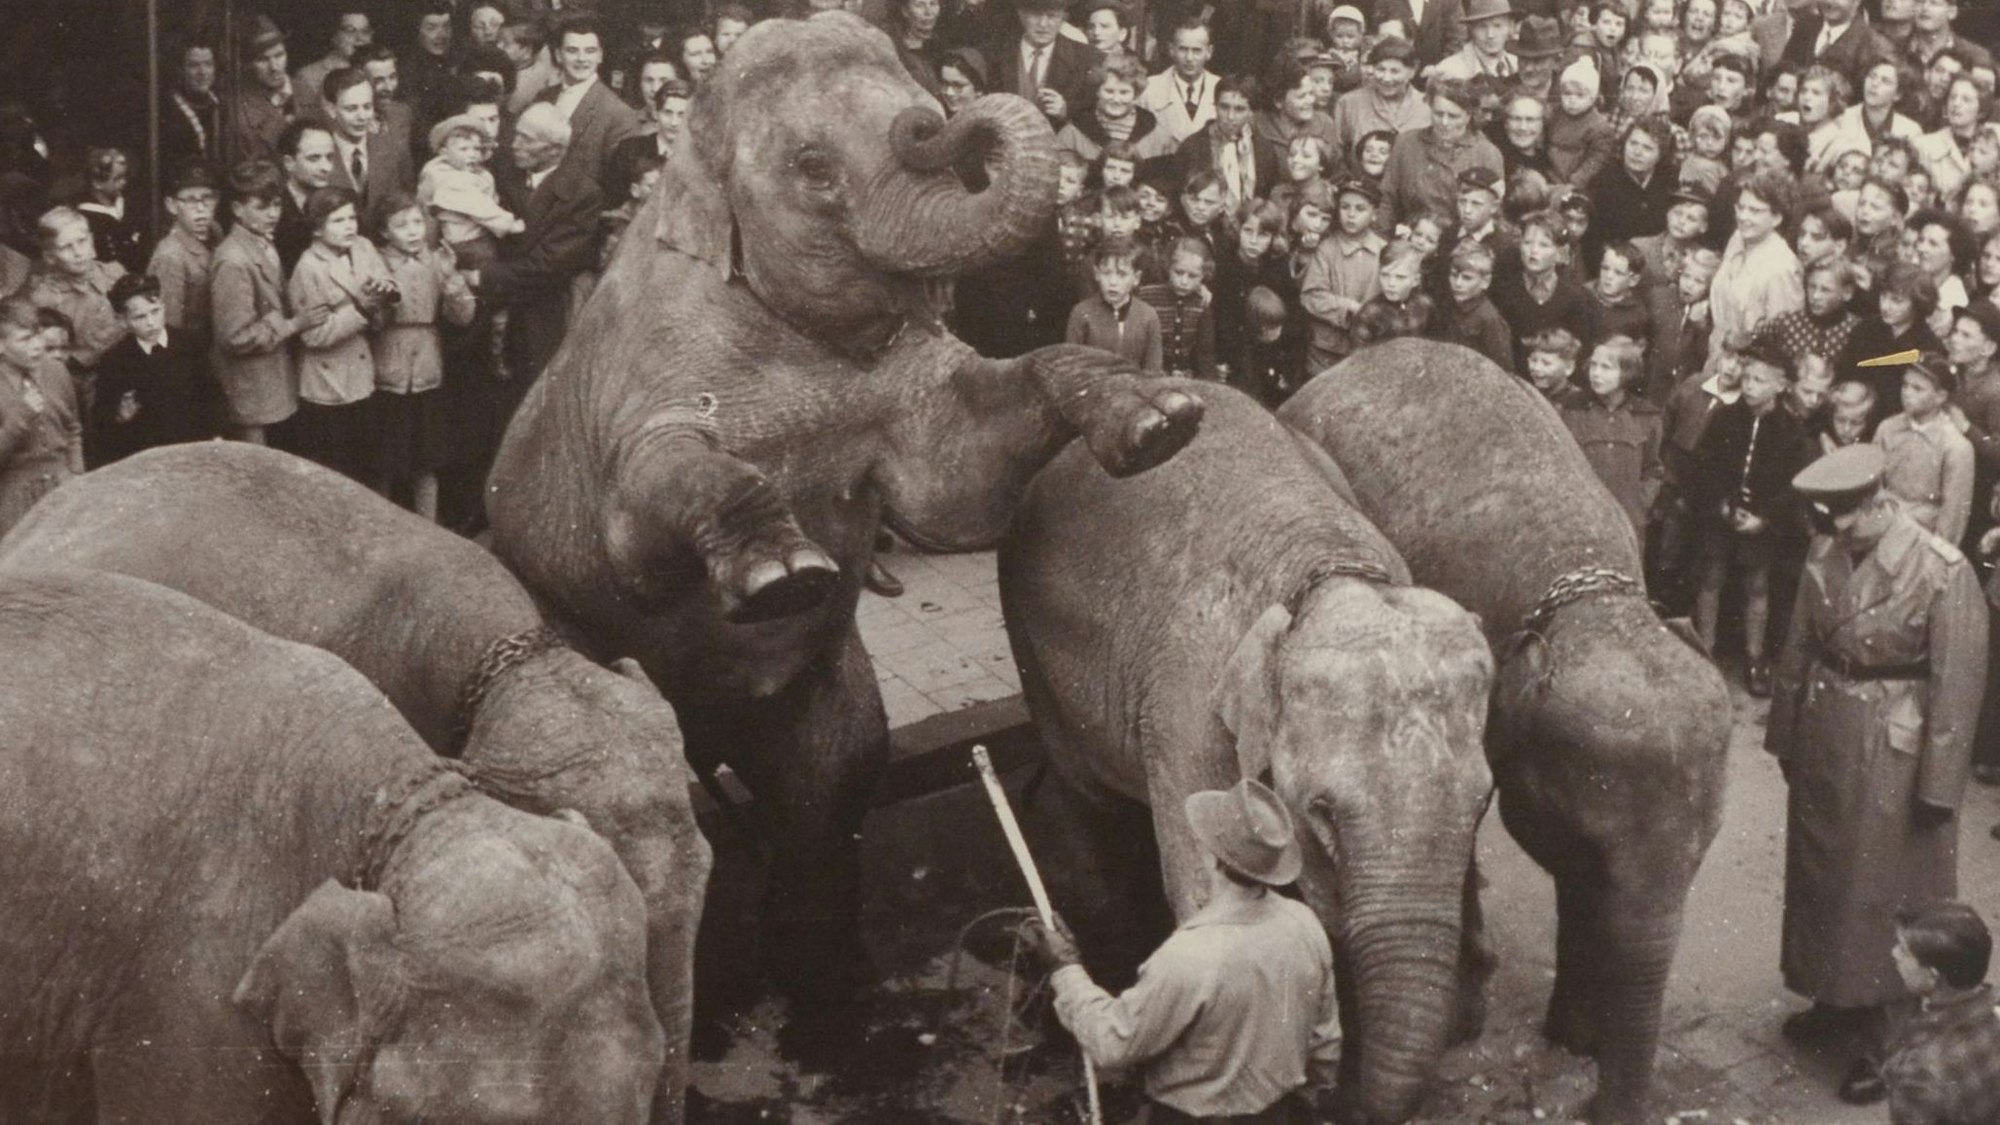 Der Circus Williams ließ seine Elefanten auf der Neustraße in der Euskirchener Innenstadt vor großem Publikum Kunststücke vorführen. Die Aufnahme ist in der neuen Ausstellung des Stadtmuseums zu sehen.